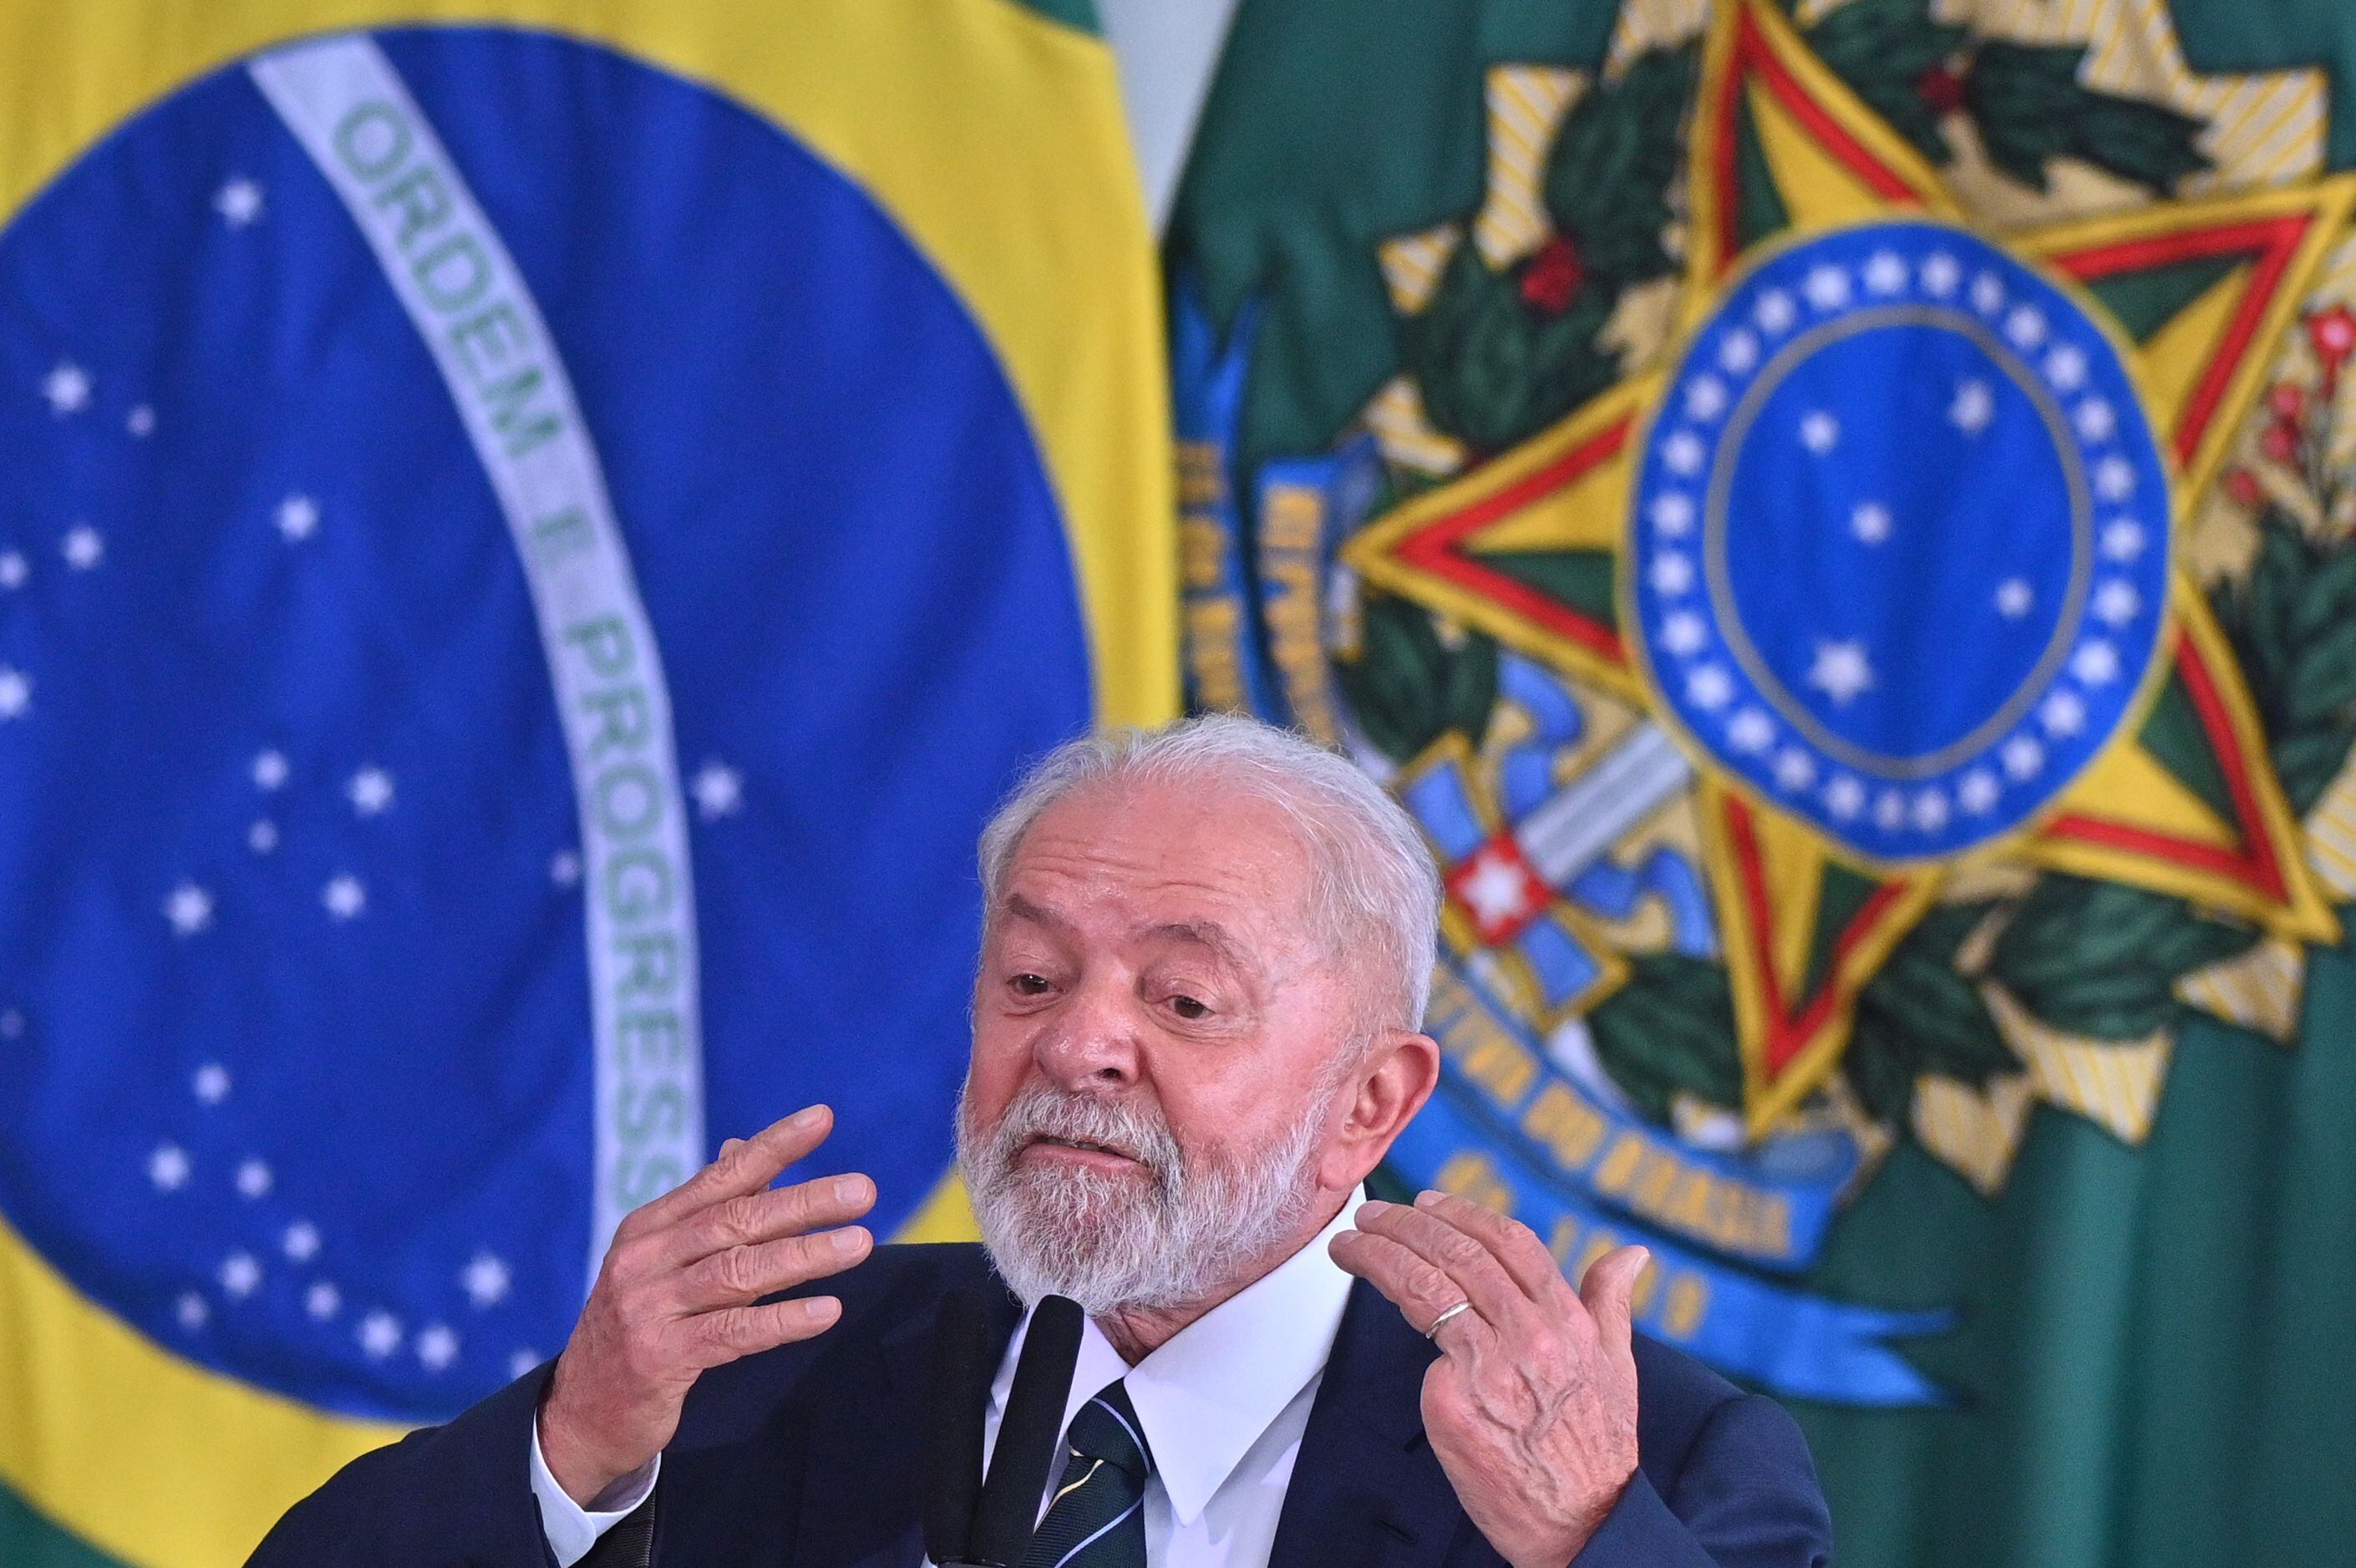 Finalmente, Lula da Silva felicitó a Vladimir Putin por su victoria en las cuestionadas elecciones rusas